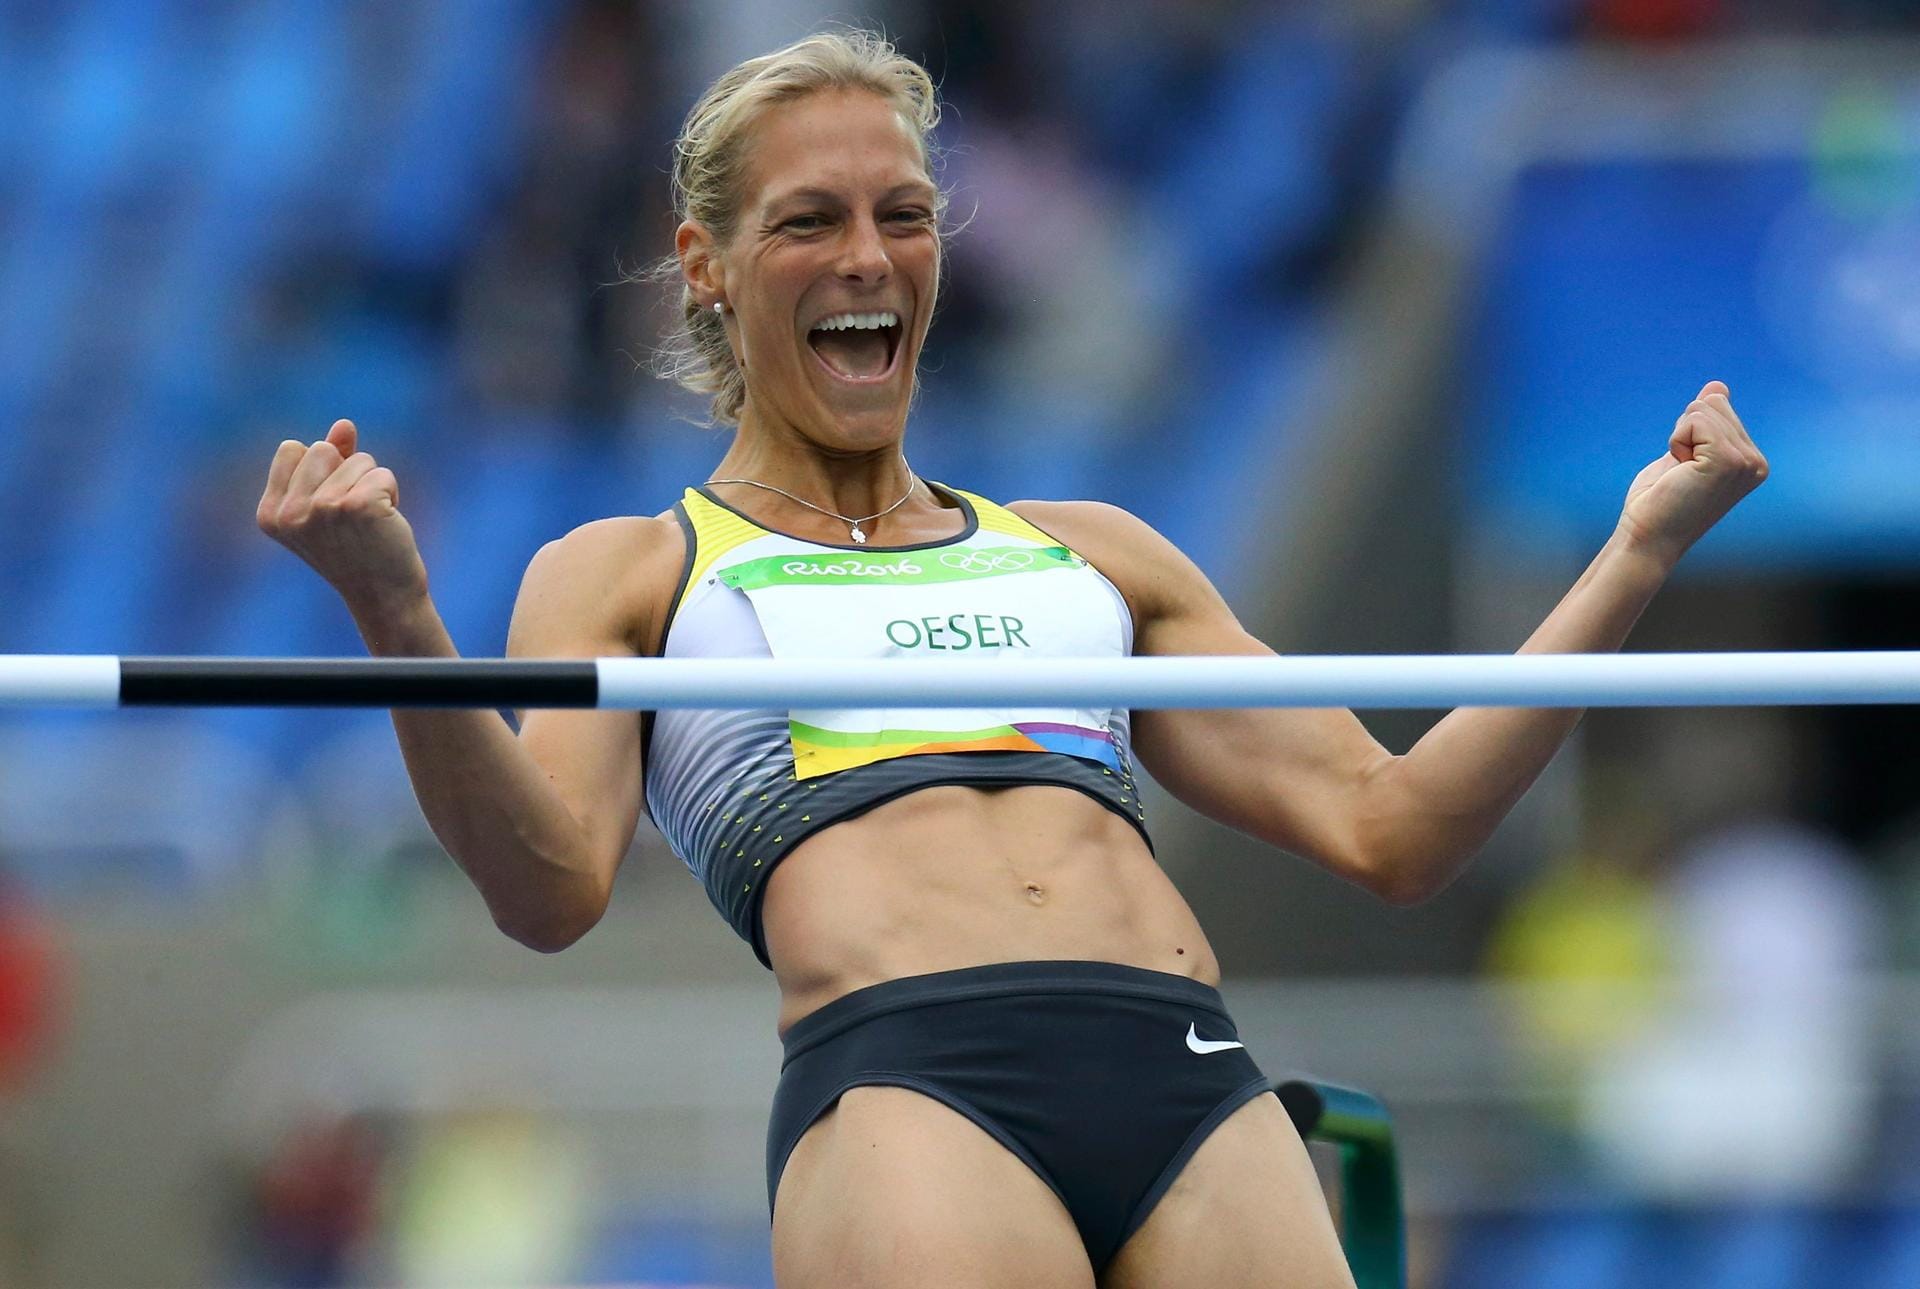 Deutschlands Siebenkämpferin Jennifer Oeser freut sich riesig über ihre starken 1,86 Meter im Hochsprung.